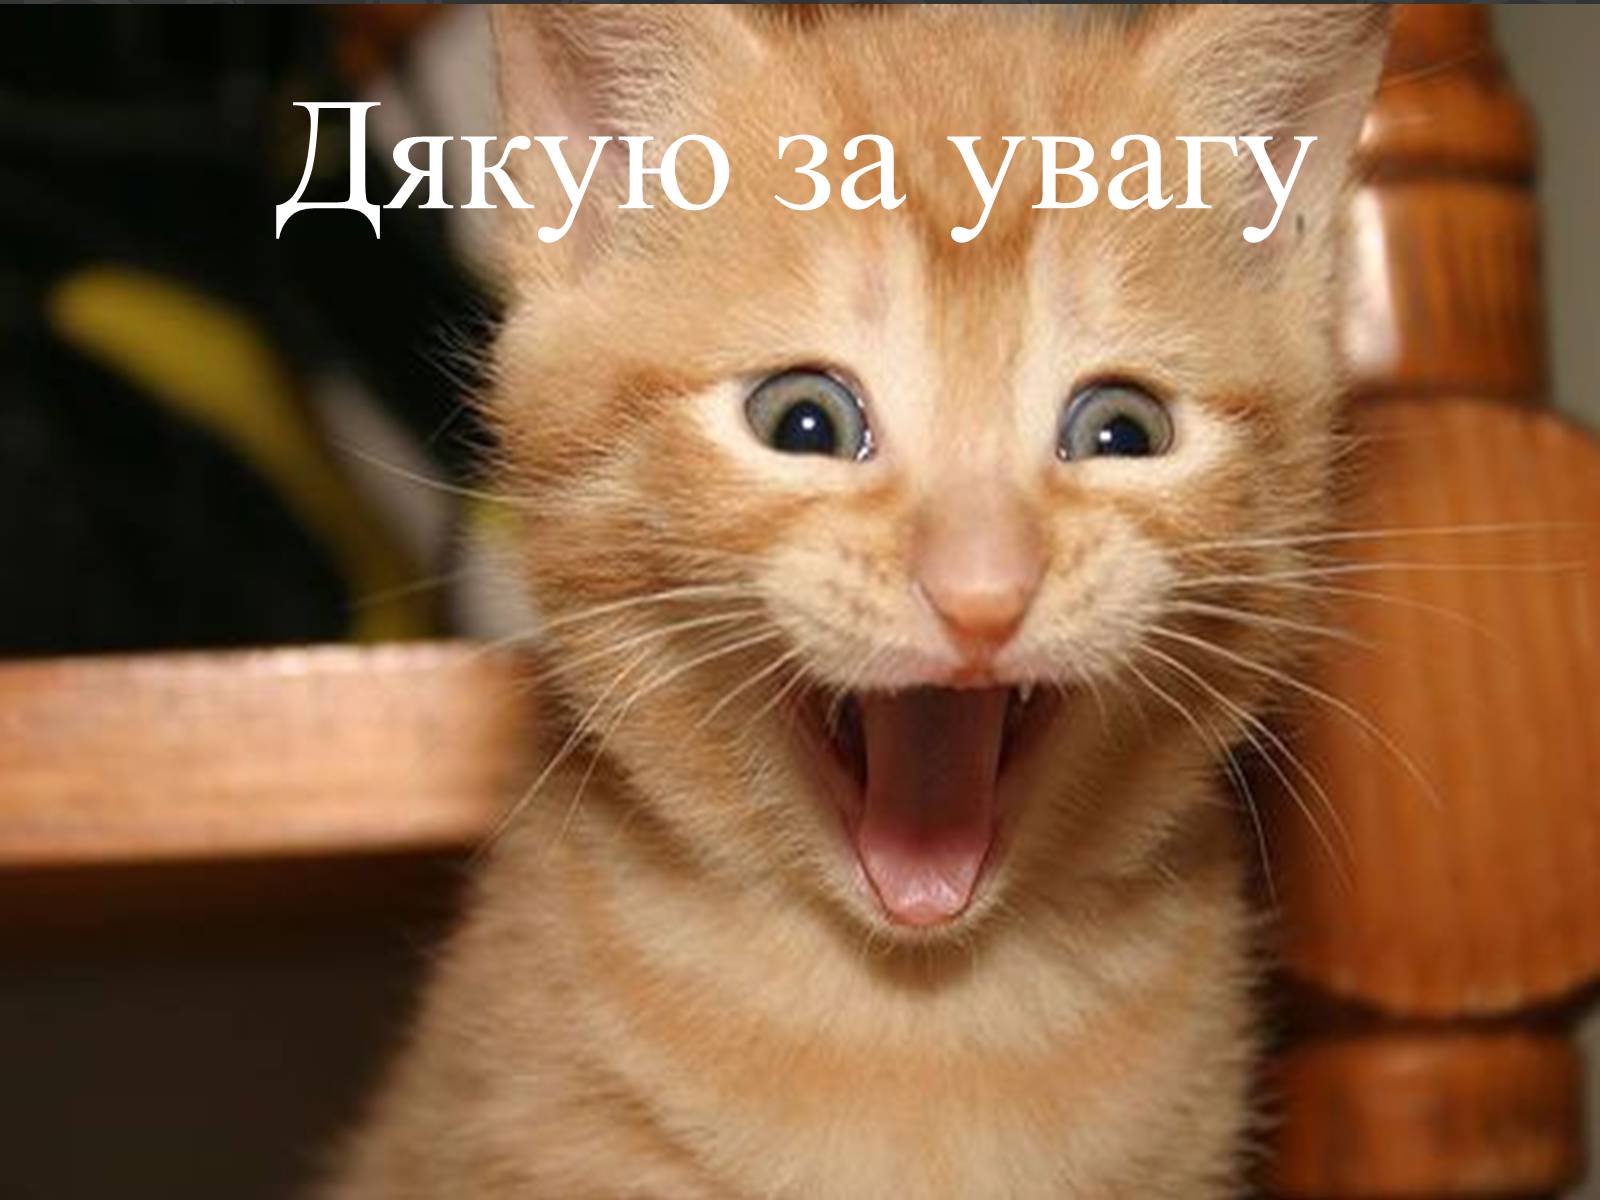 Под хорошая веселая. Кот смеется. Рыжий котенок смеется. Смешные котята. Котик улыбается.